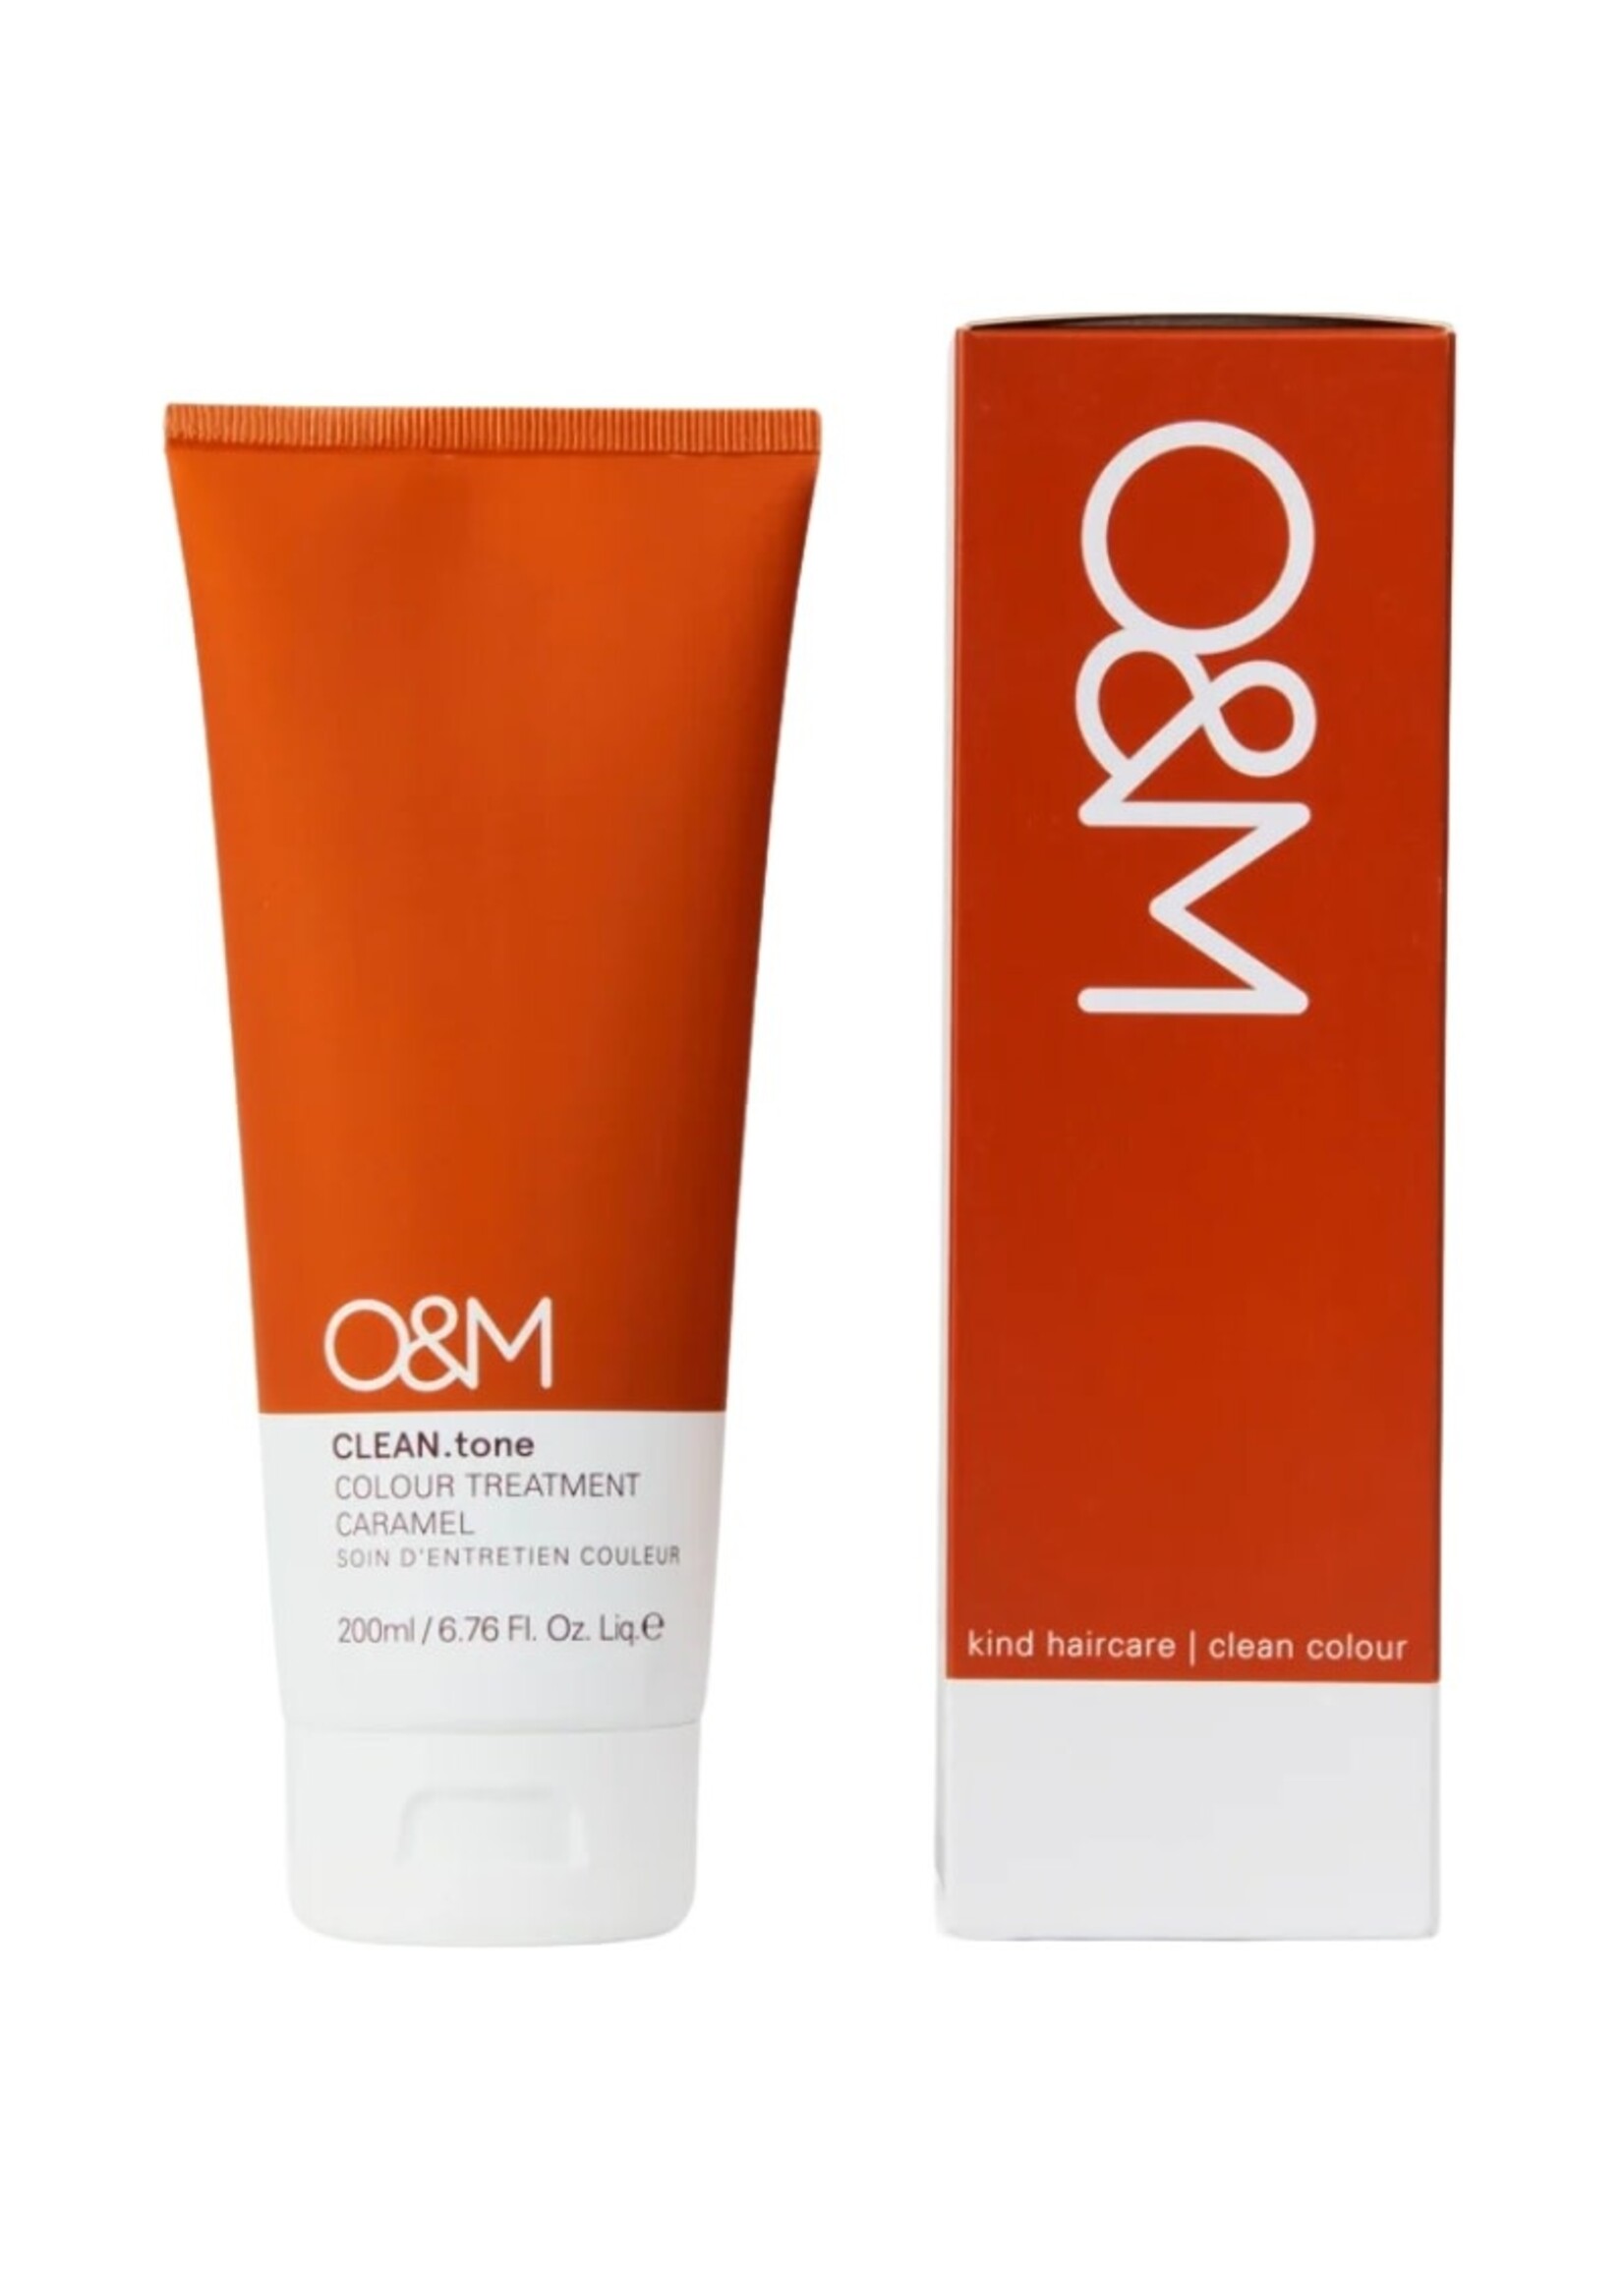 Original & Mineral O&M CLEAN.tone Caramel Color Treatment 200ml